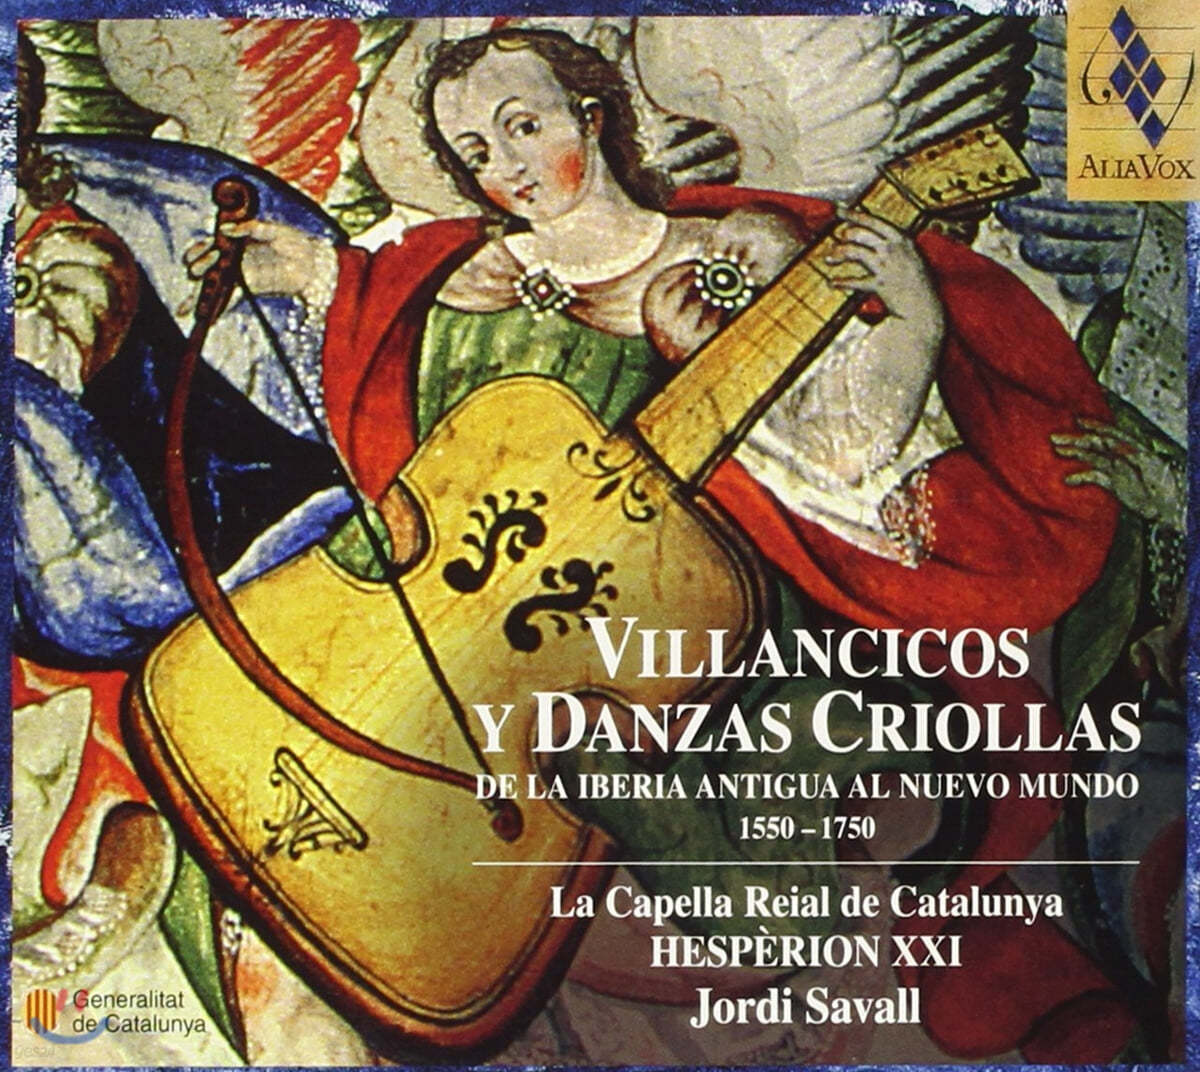 Jordi Savall 빌란치코와 크리올라 춤곡 (Villancicos y Danzas Criollas)